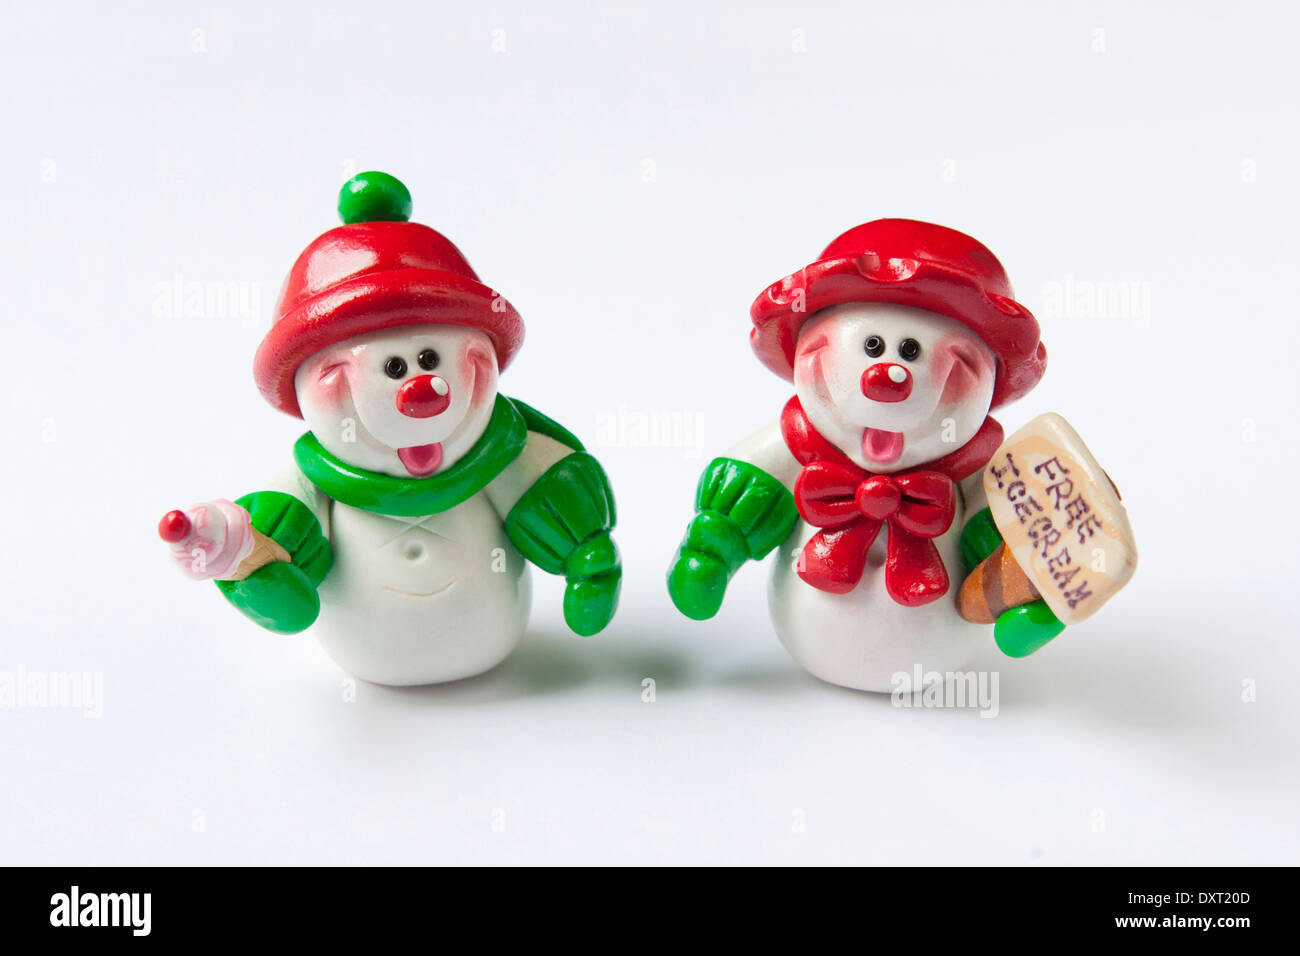 Zwei niedliche Ton Schneemänner tragen rote & grünen Urlaub Kleider, verlosen kostenlos Eis im Winter. Stockfoto